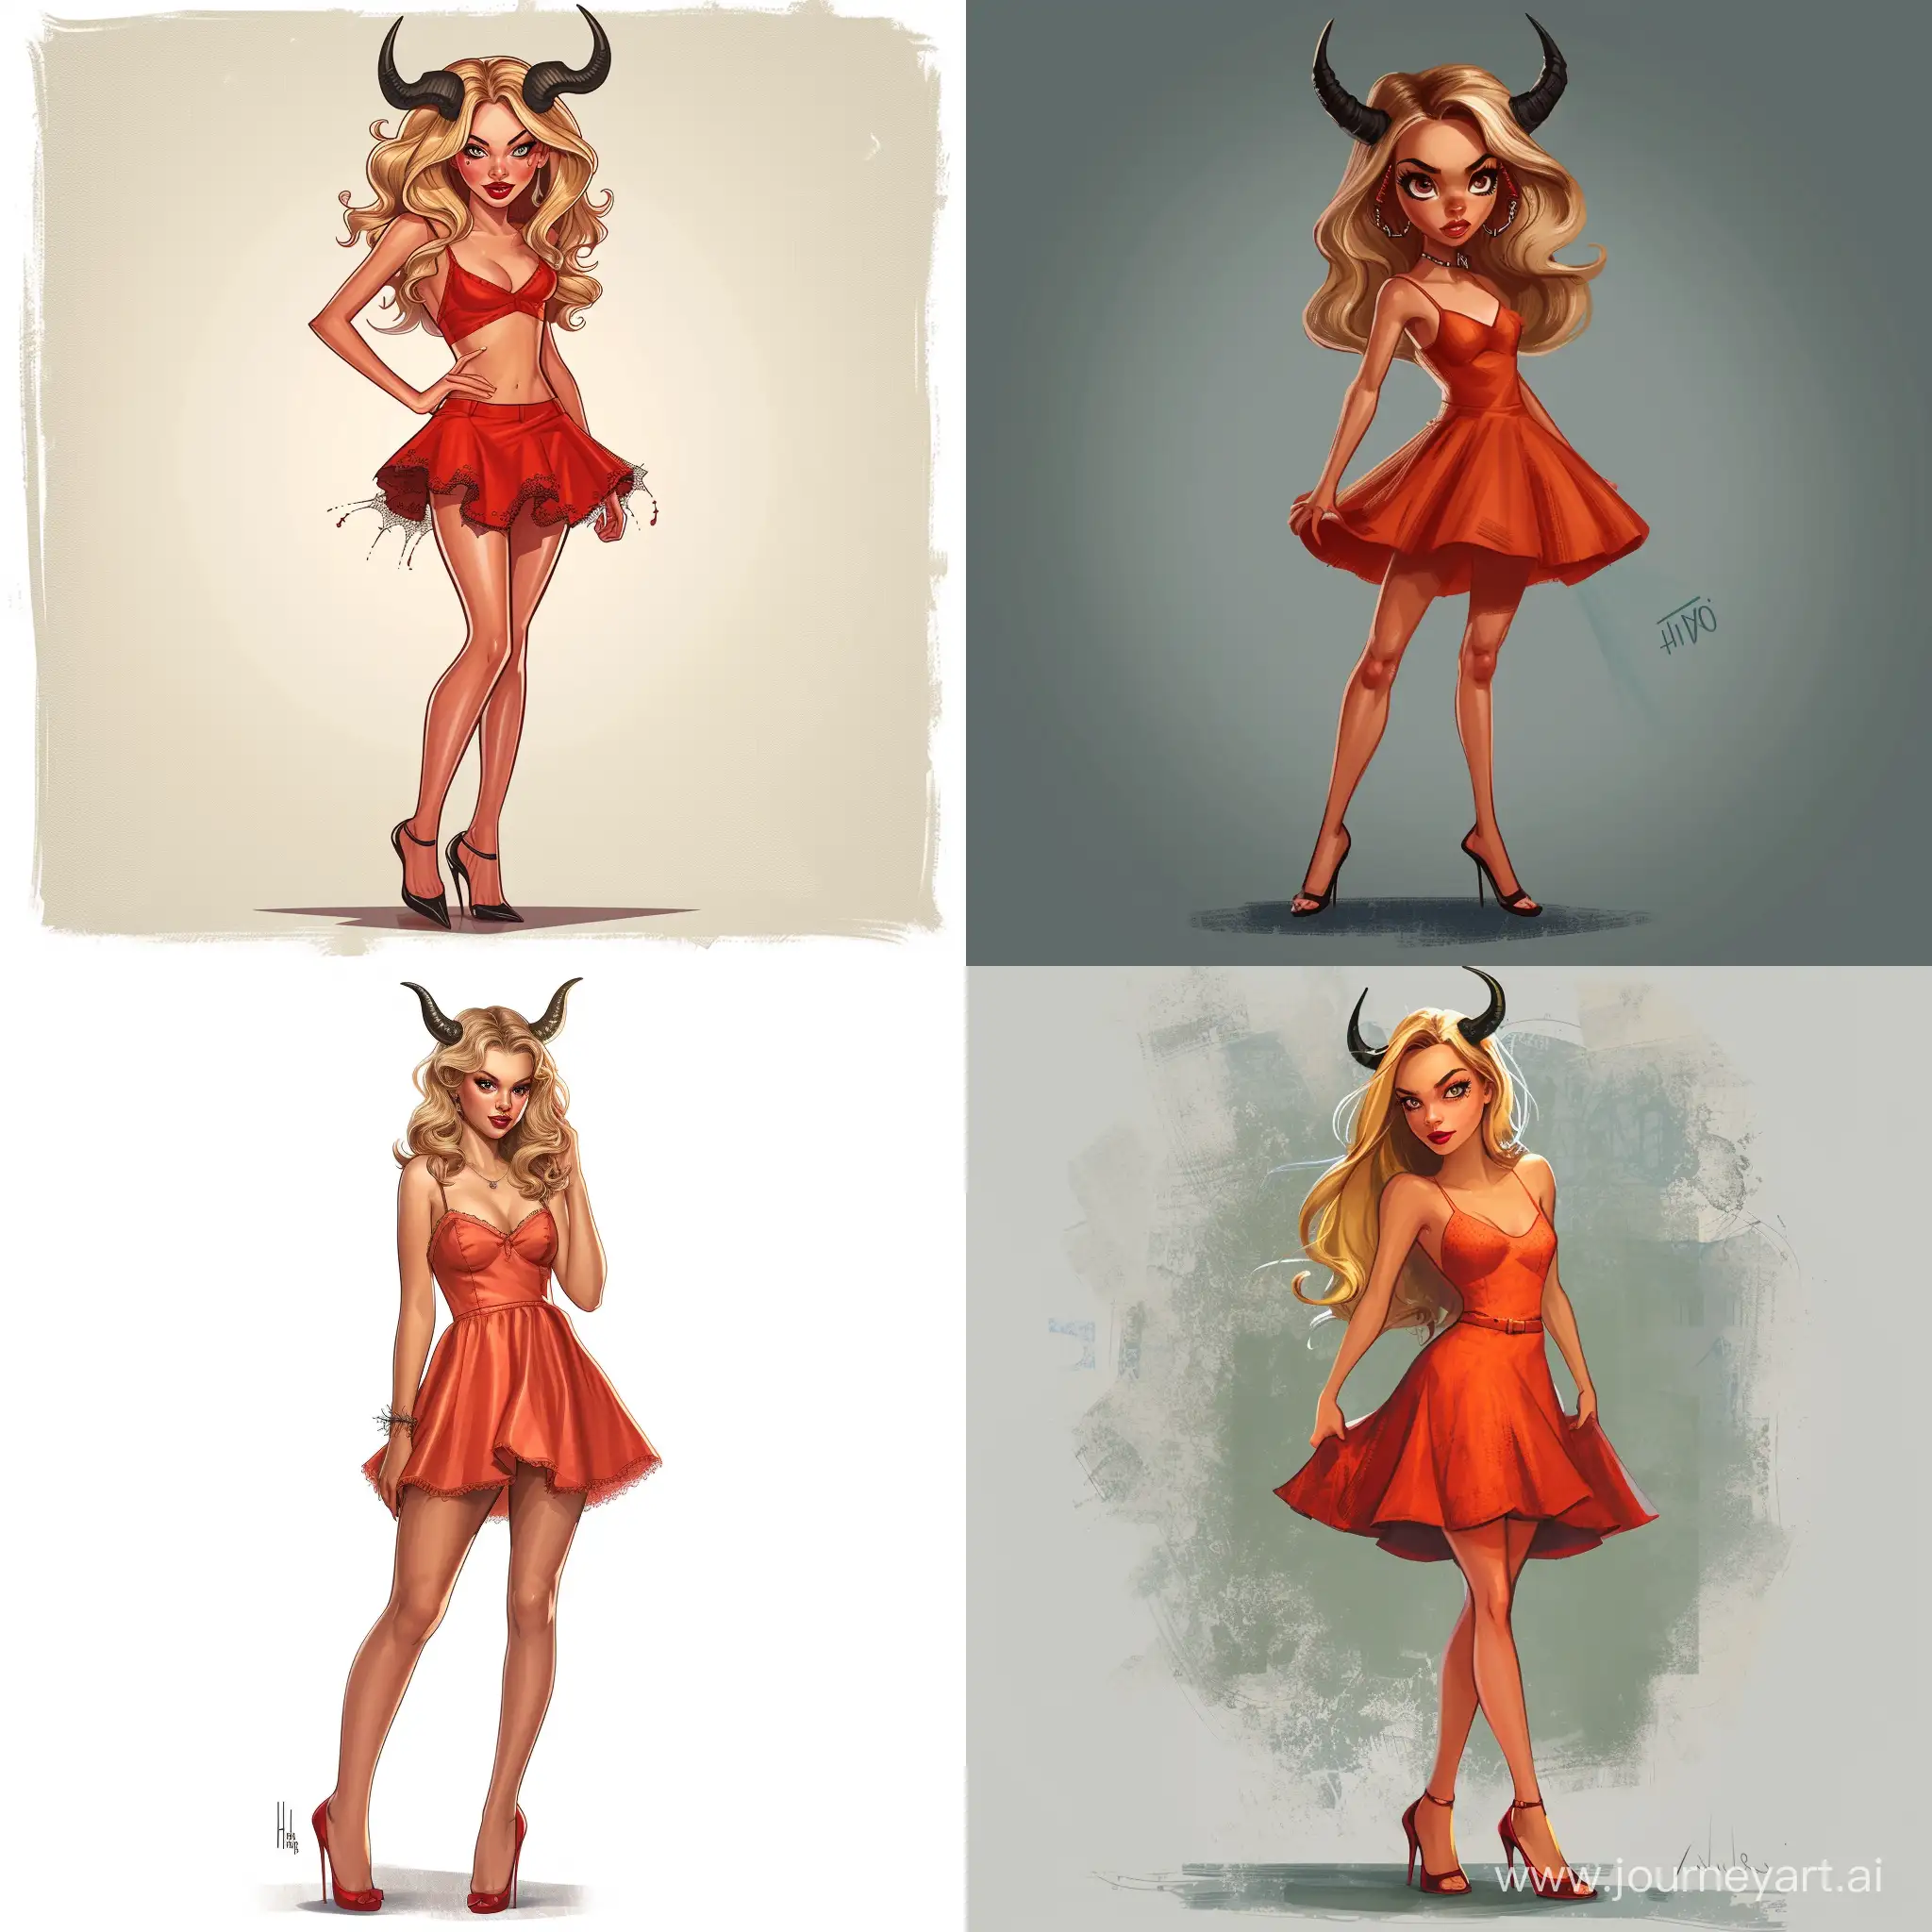 Indiana evans, Bella from h2o, teen, Halloween, demonic horns, miniskirt, red cocktail dress, heels, high quality, high detail, cartoon art